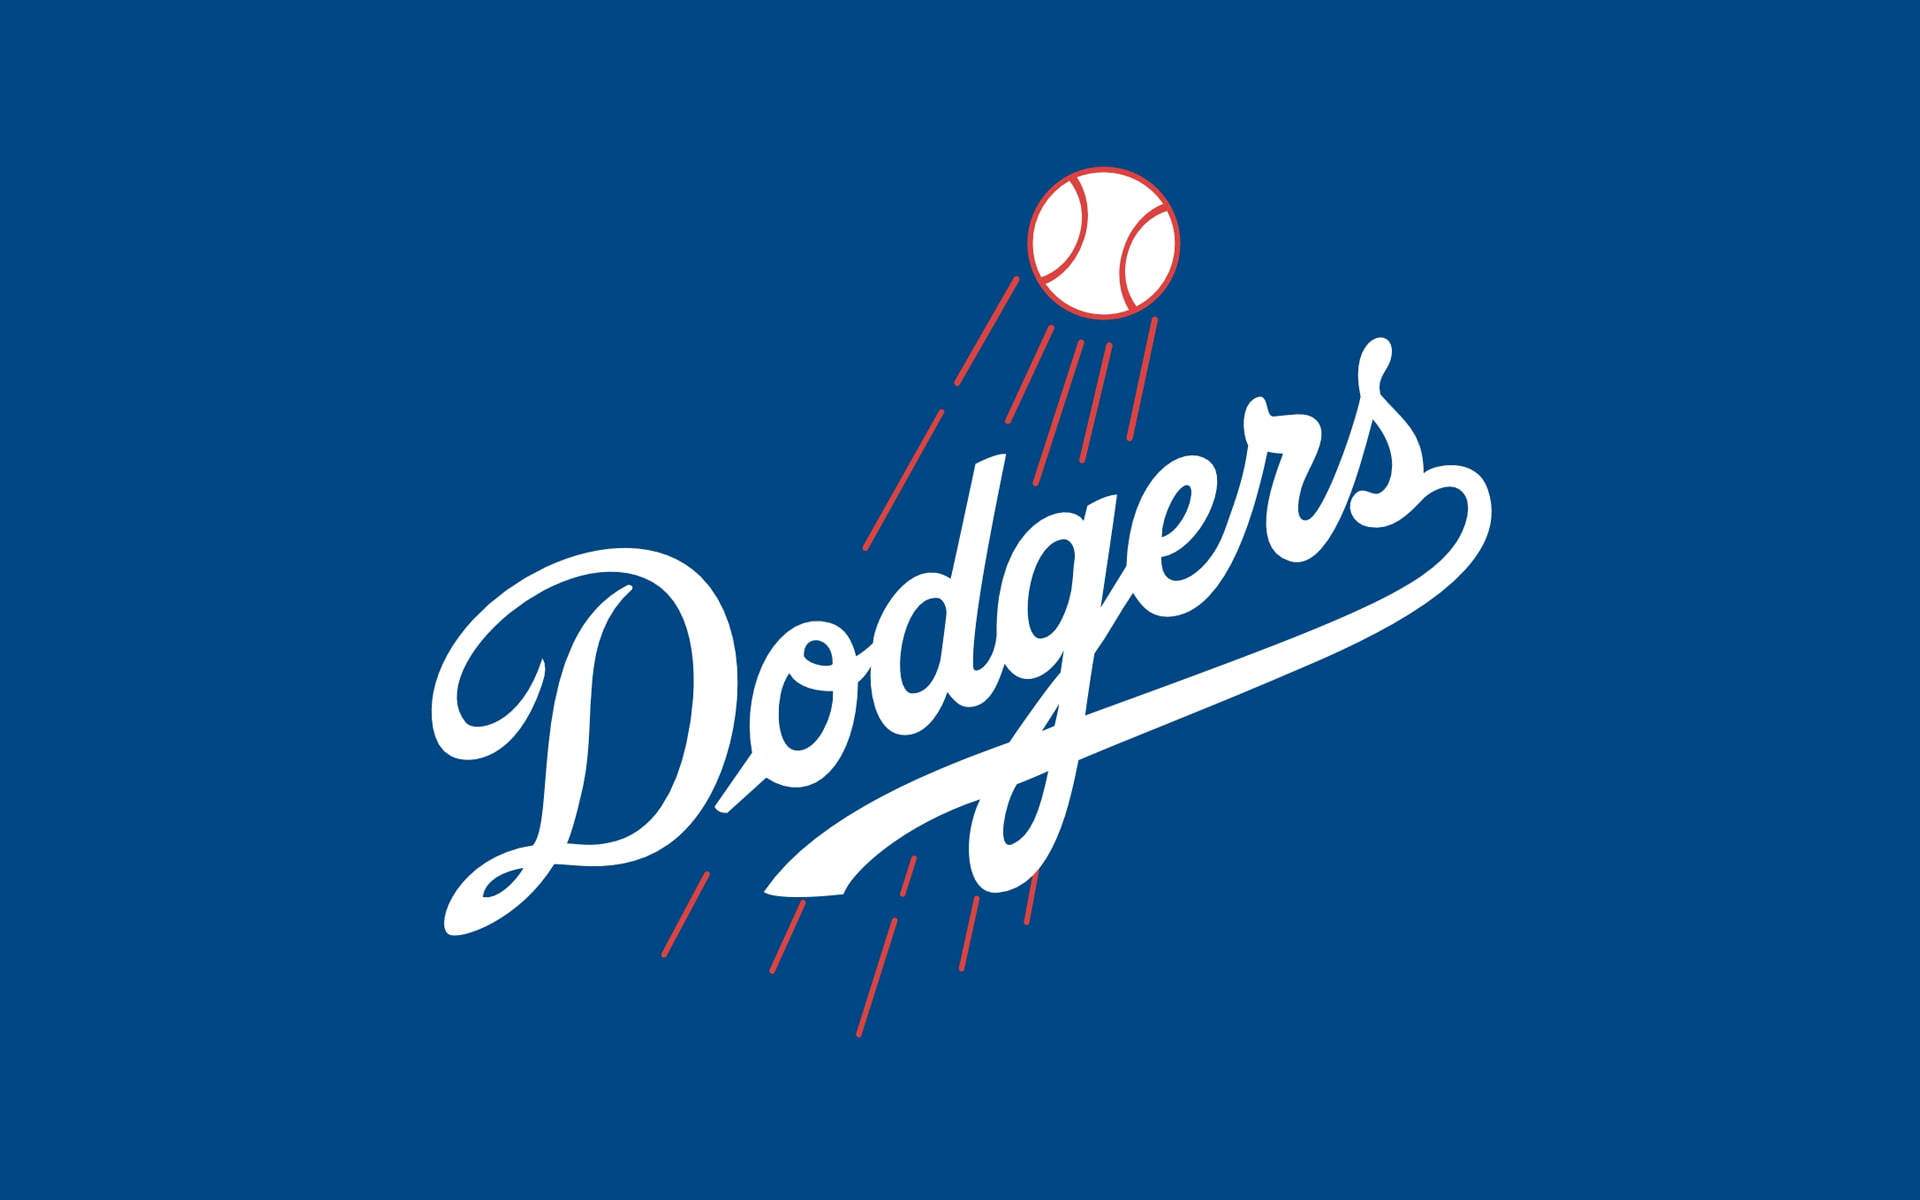 Los Angeles Dodgers Plain Colors Background